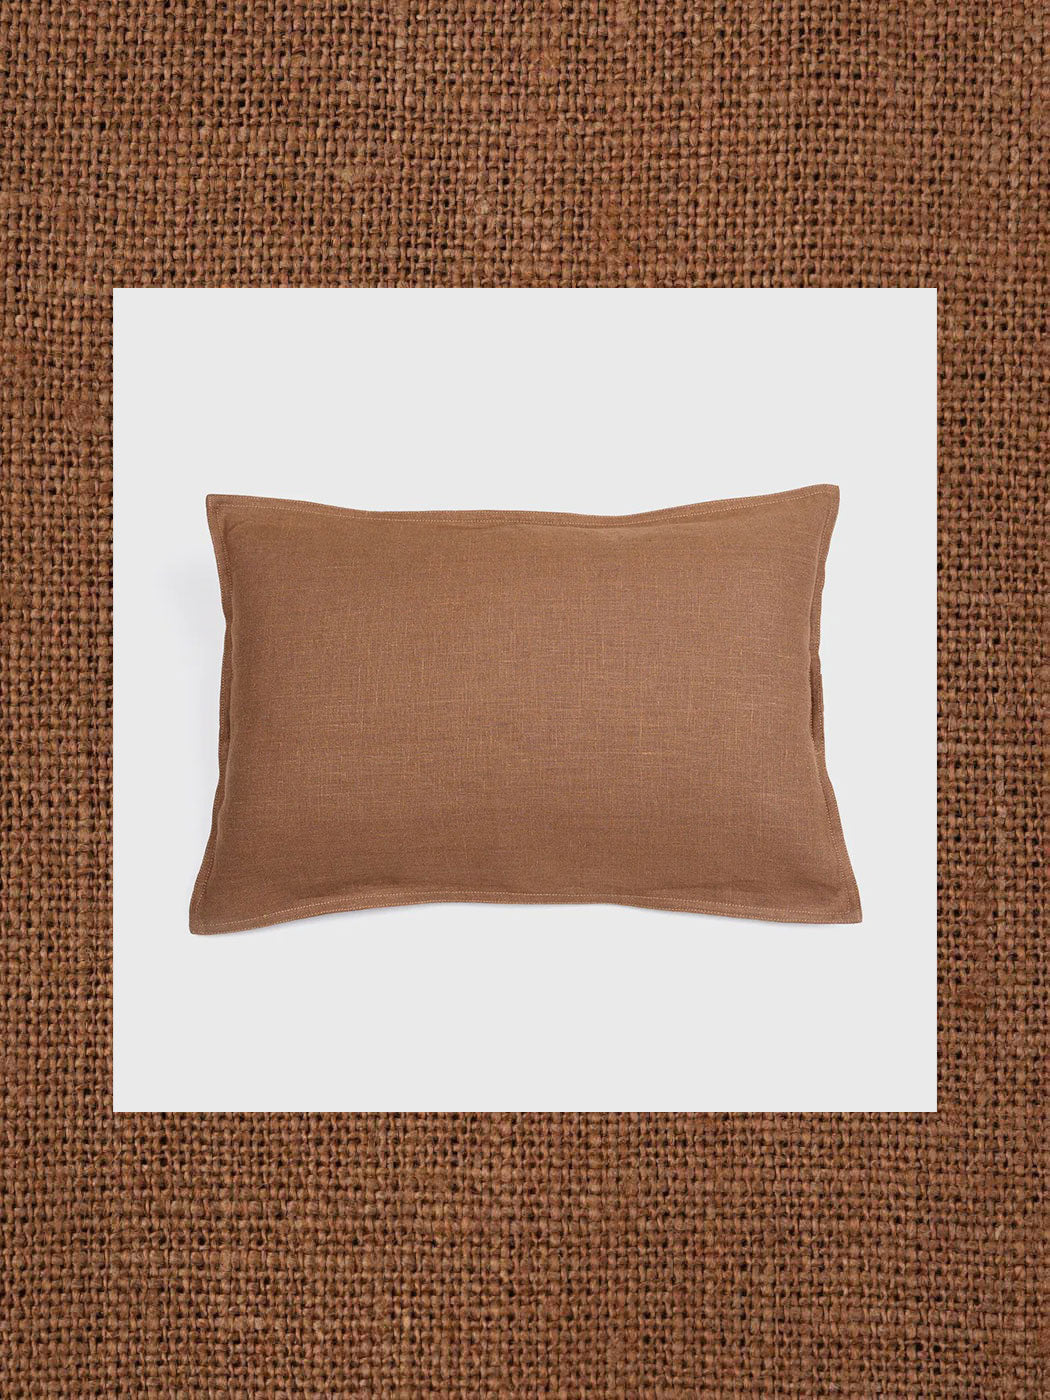 hemp fiber hemp fabrics hemp pillows